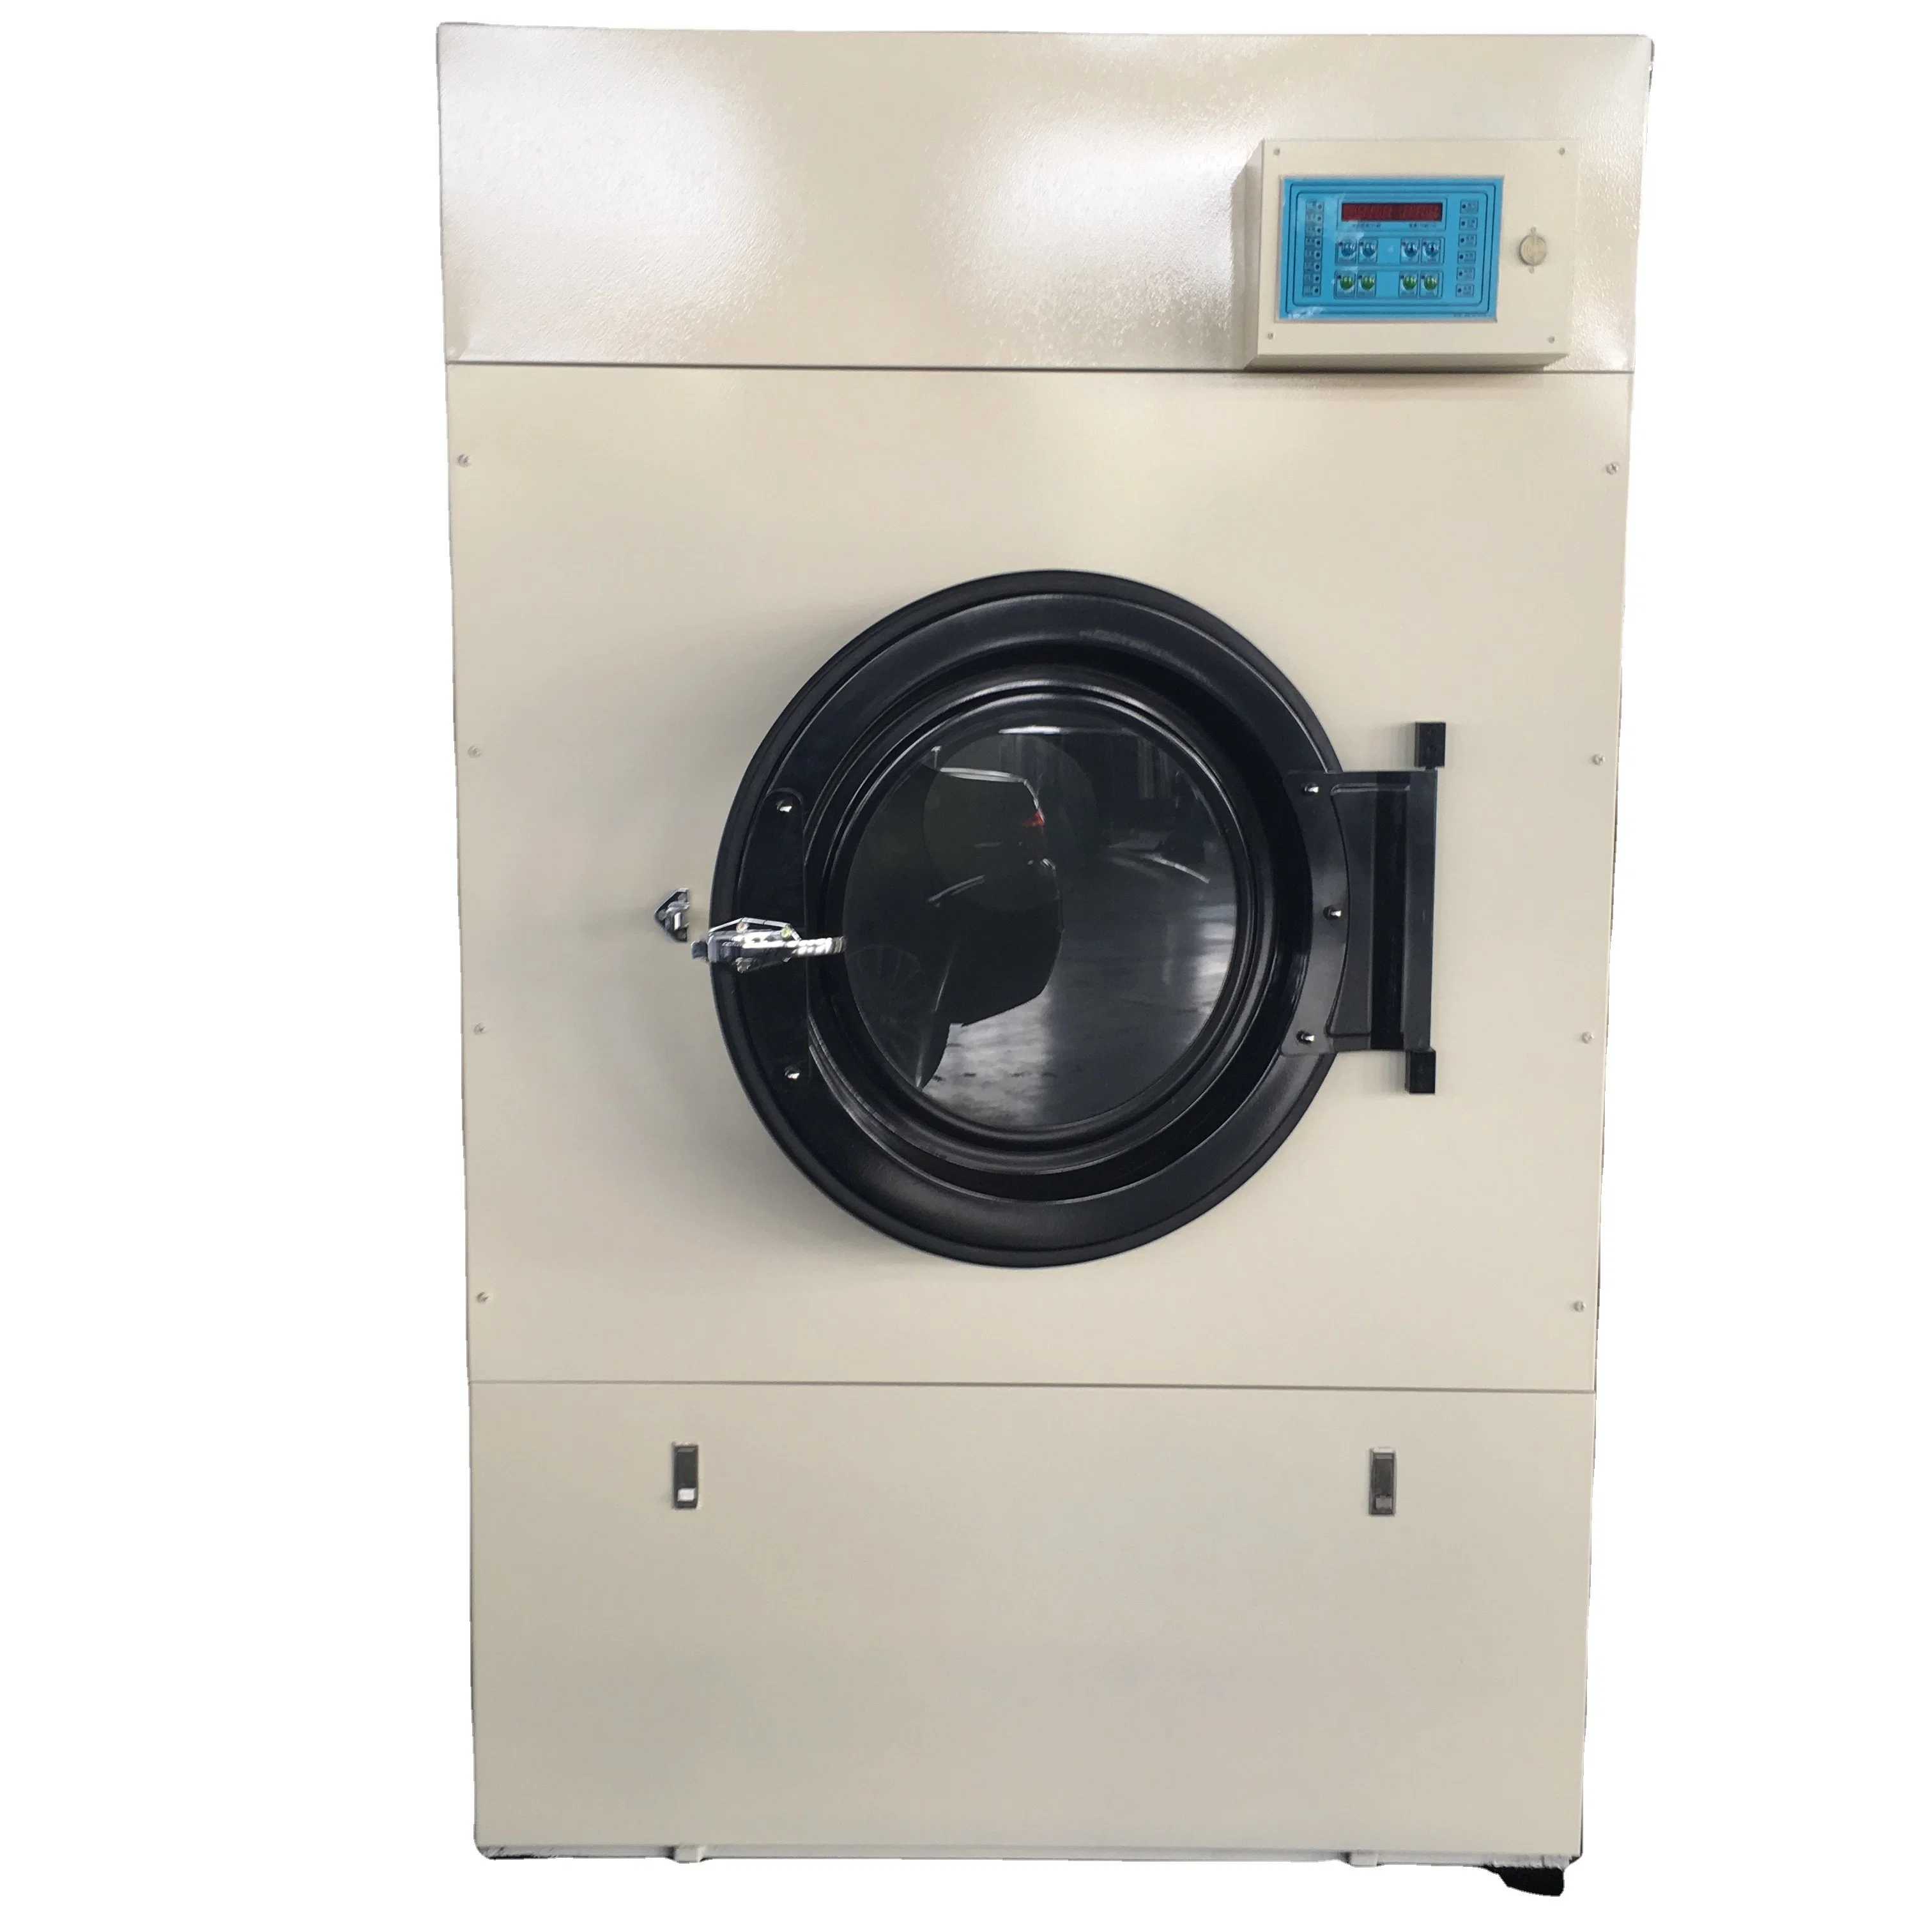 Gas Caliente / de Carga Frontal Vertical Secador Rotatorio / Ropa Tumble Dry Equipo ( SWA- 100 )